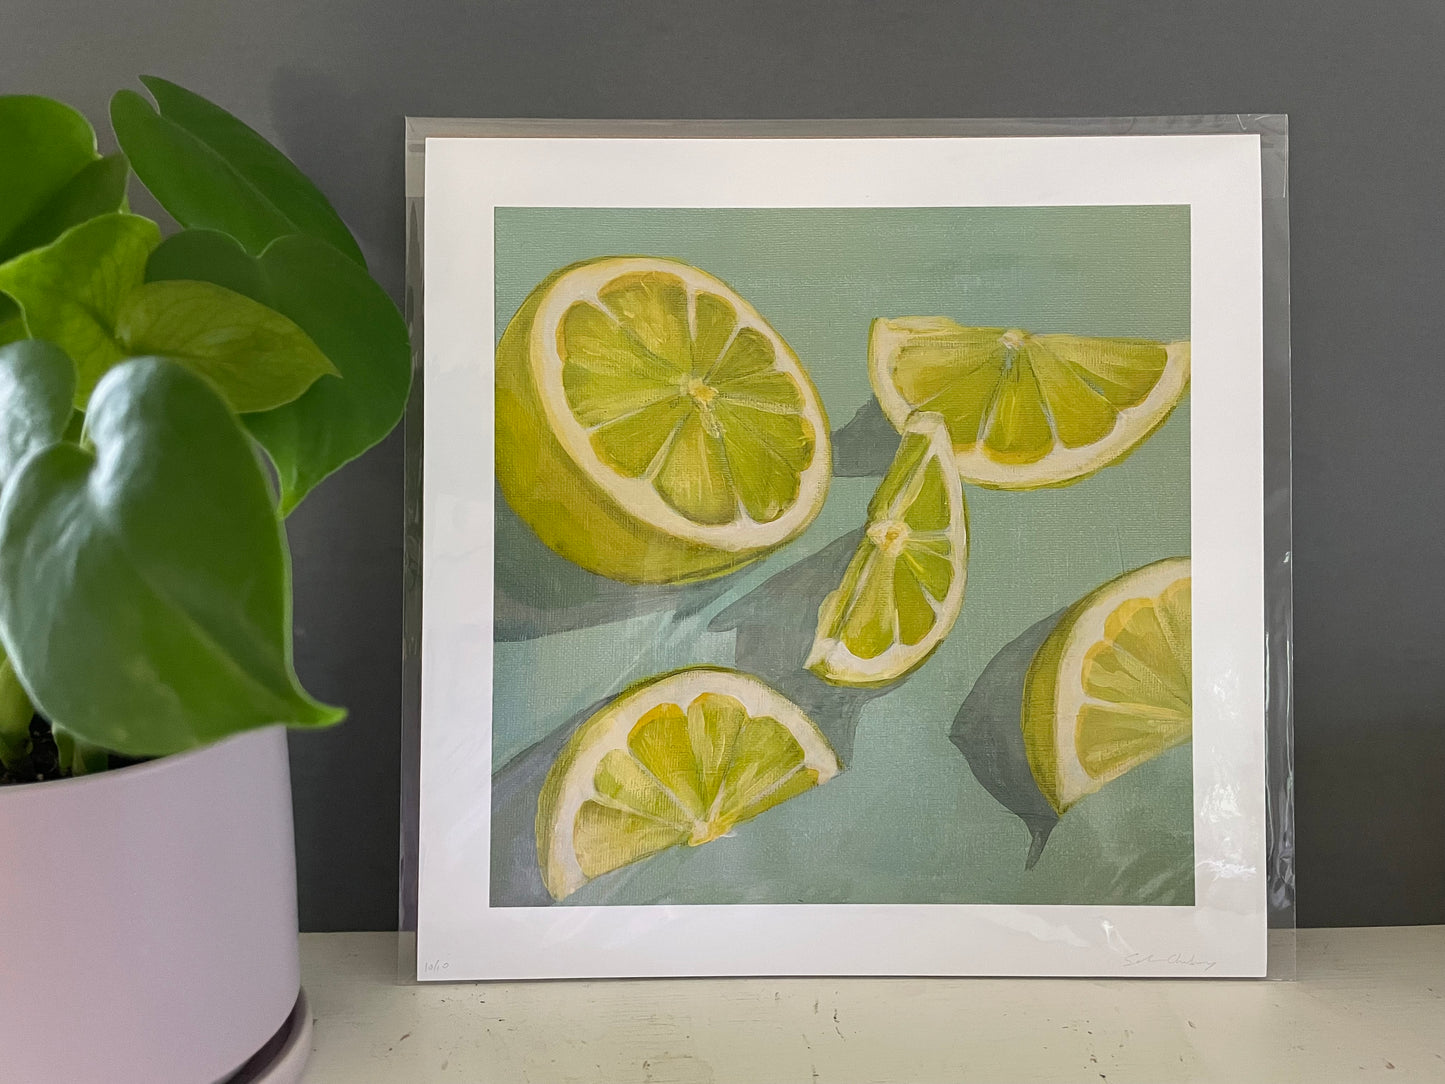 Lemon Slice - Modern Art Print